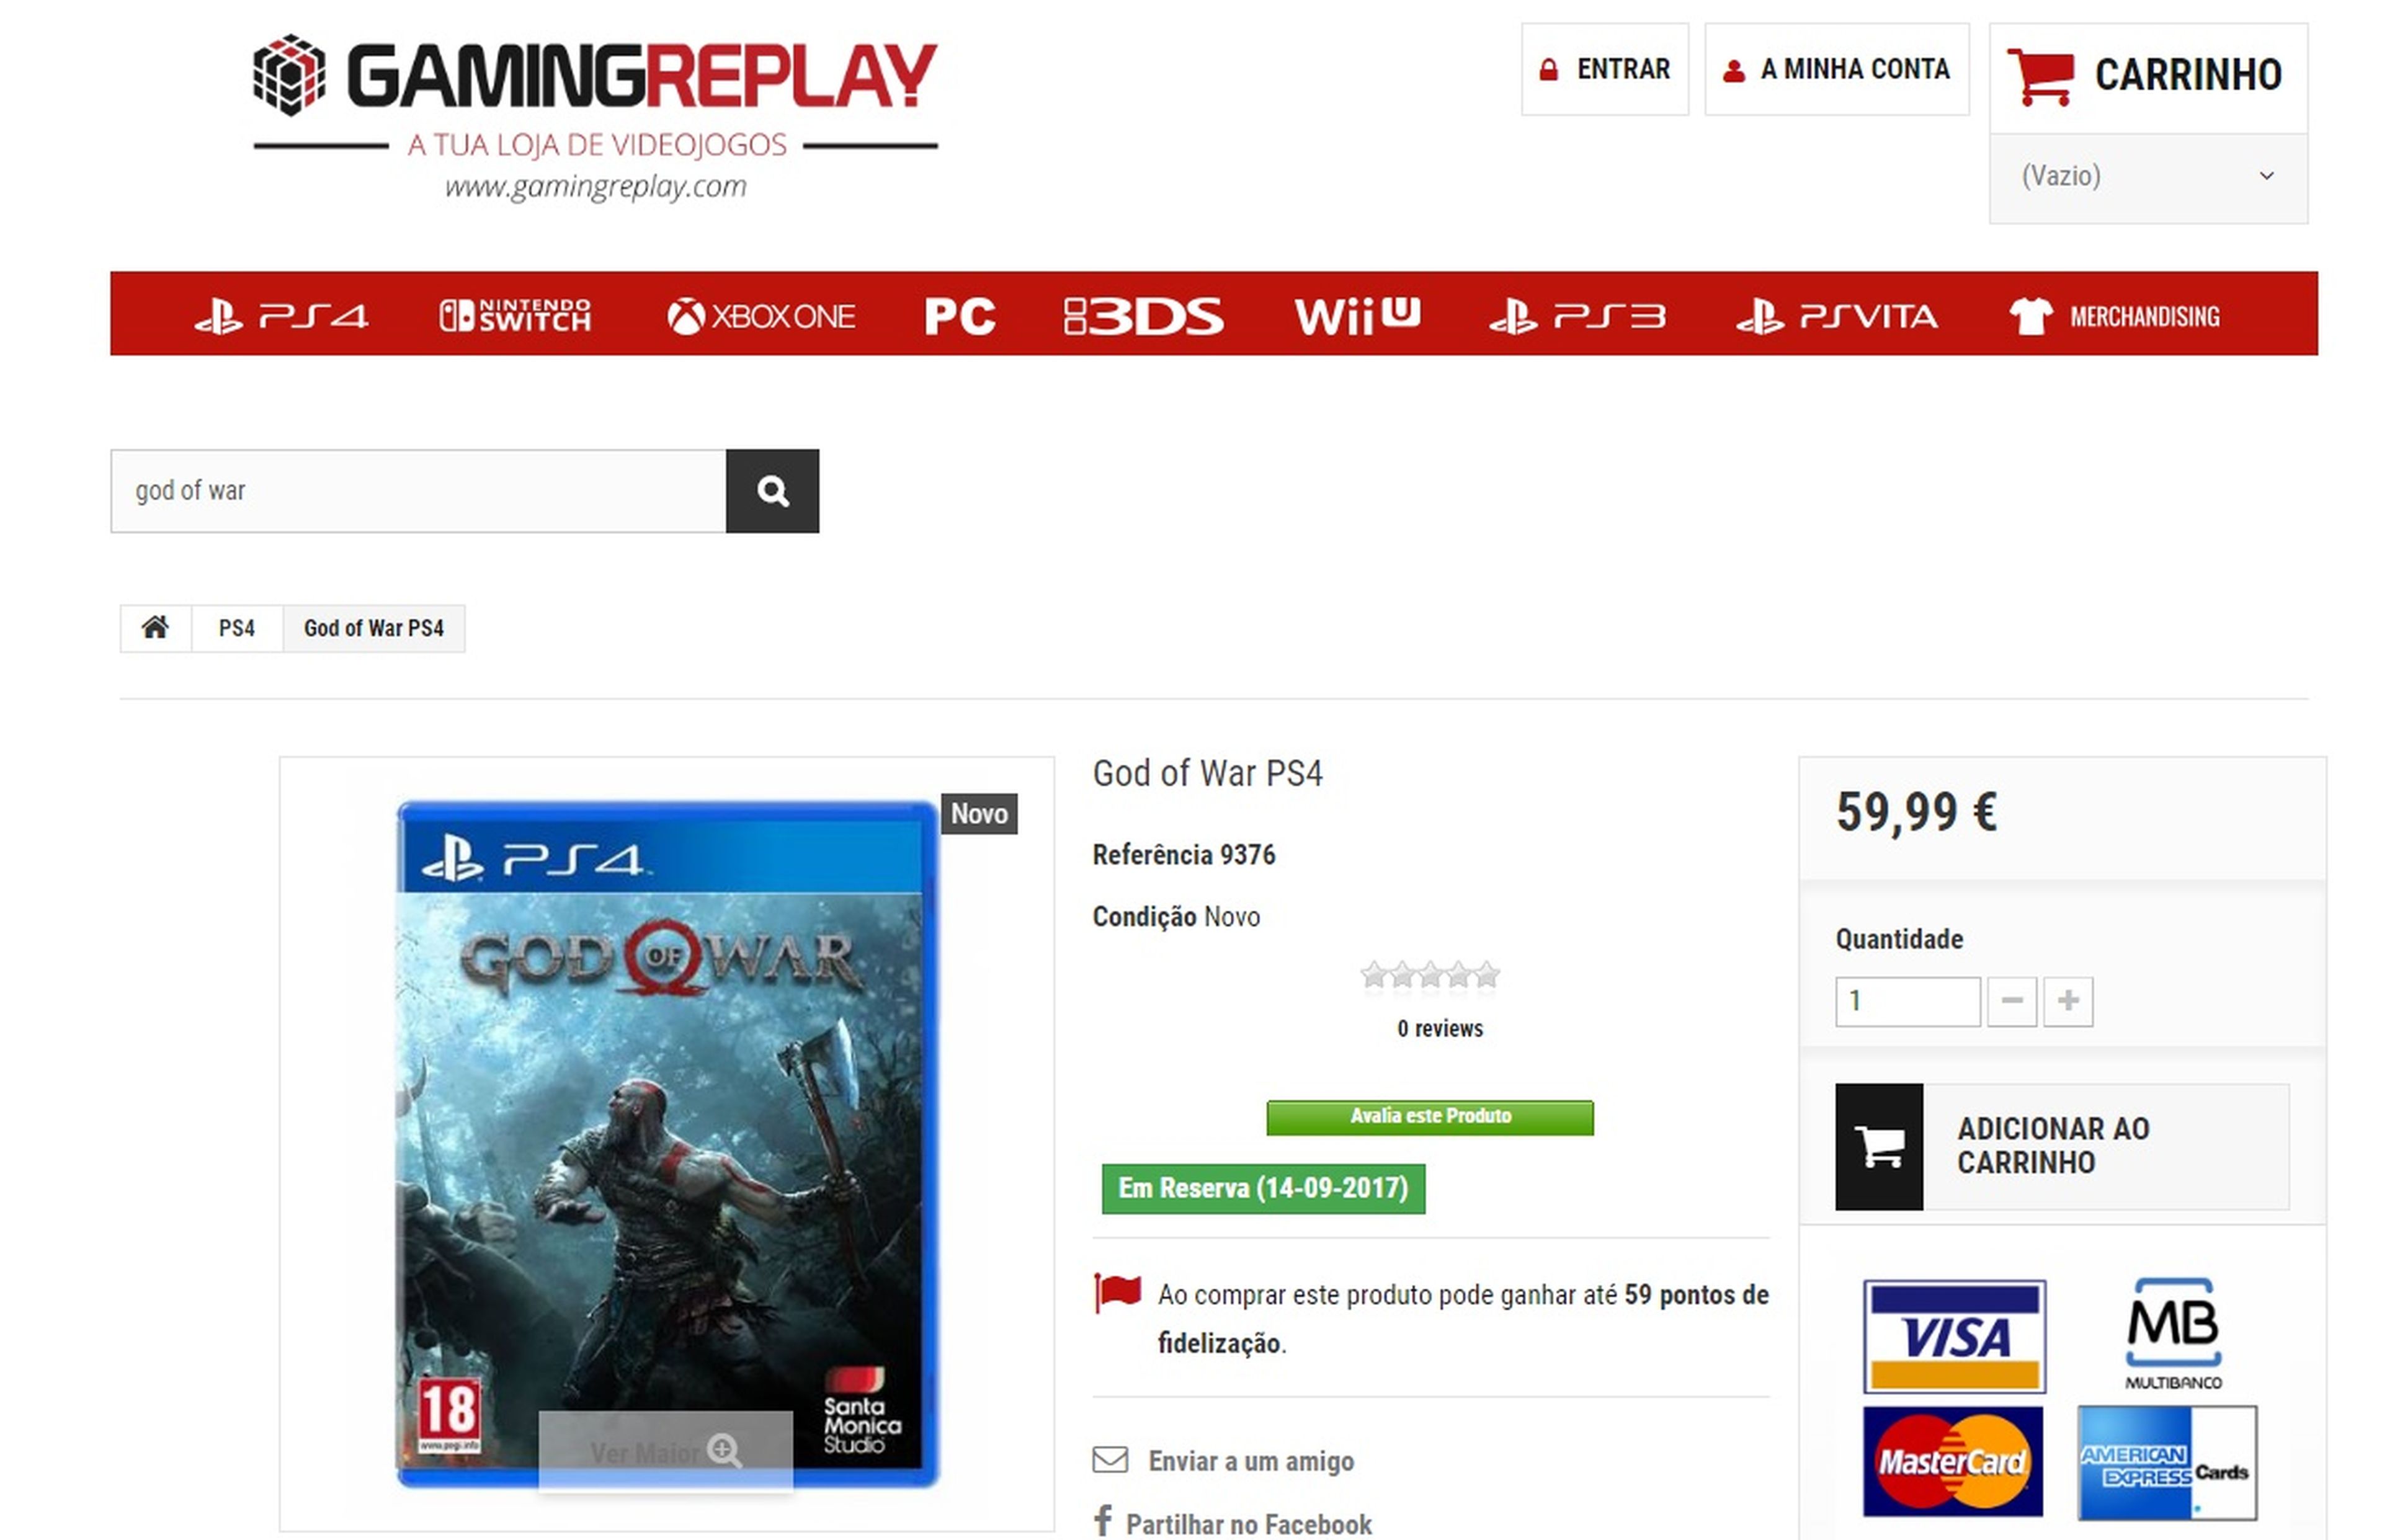 God of War para PS4 - Fecha de lanzamiento